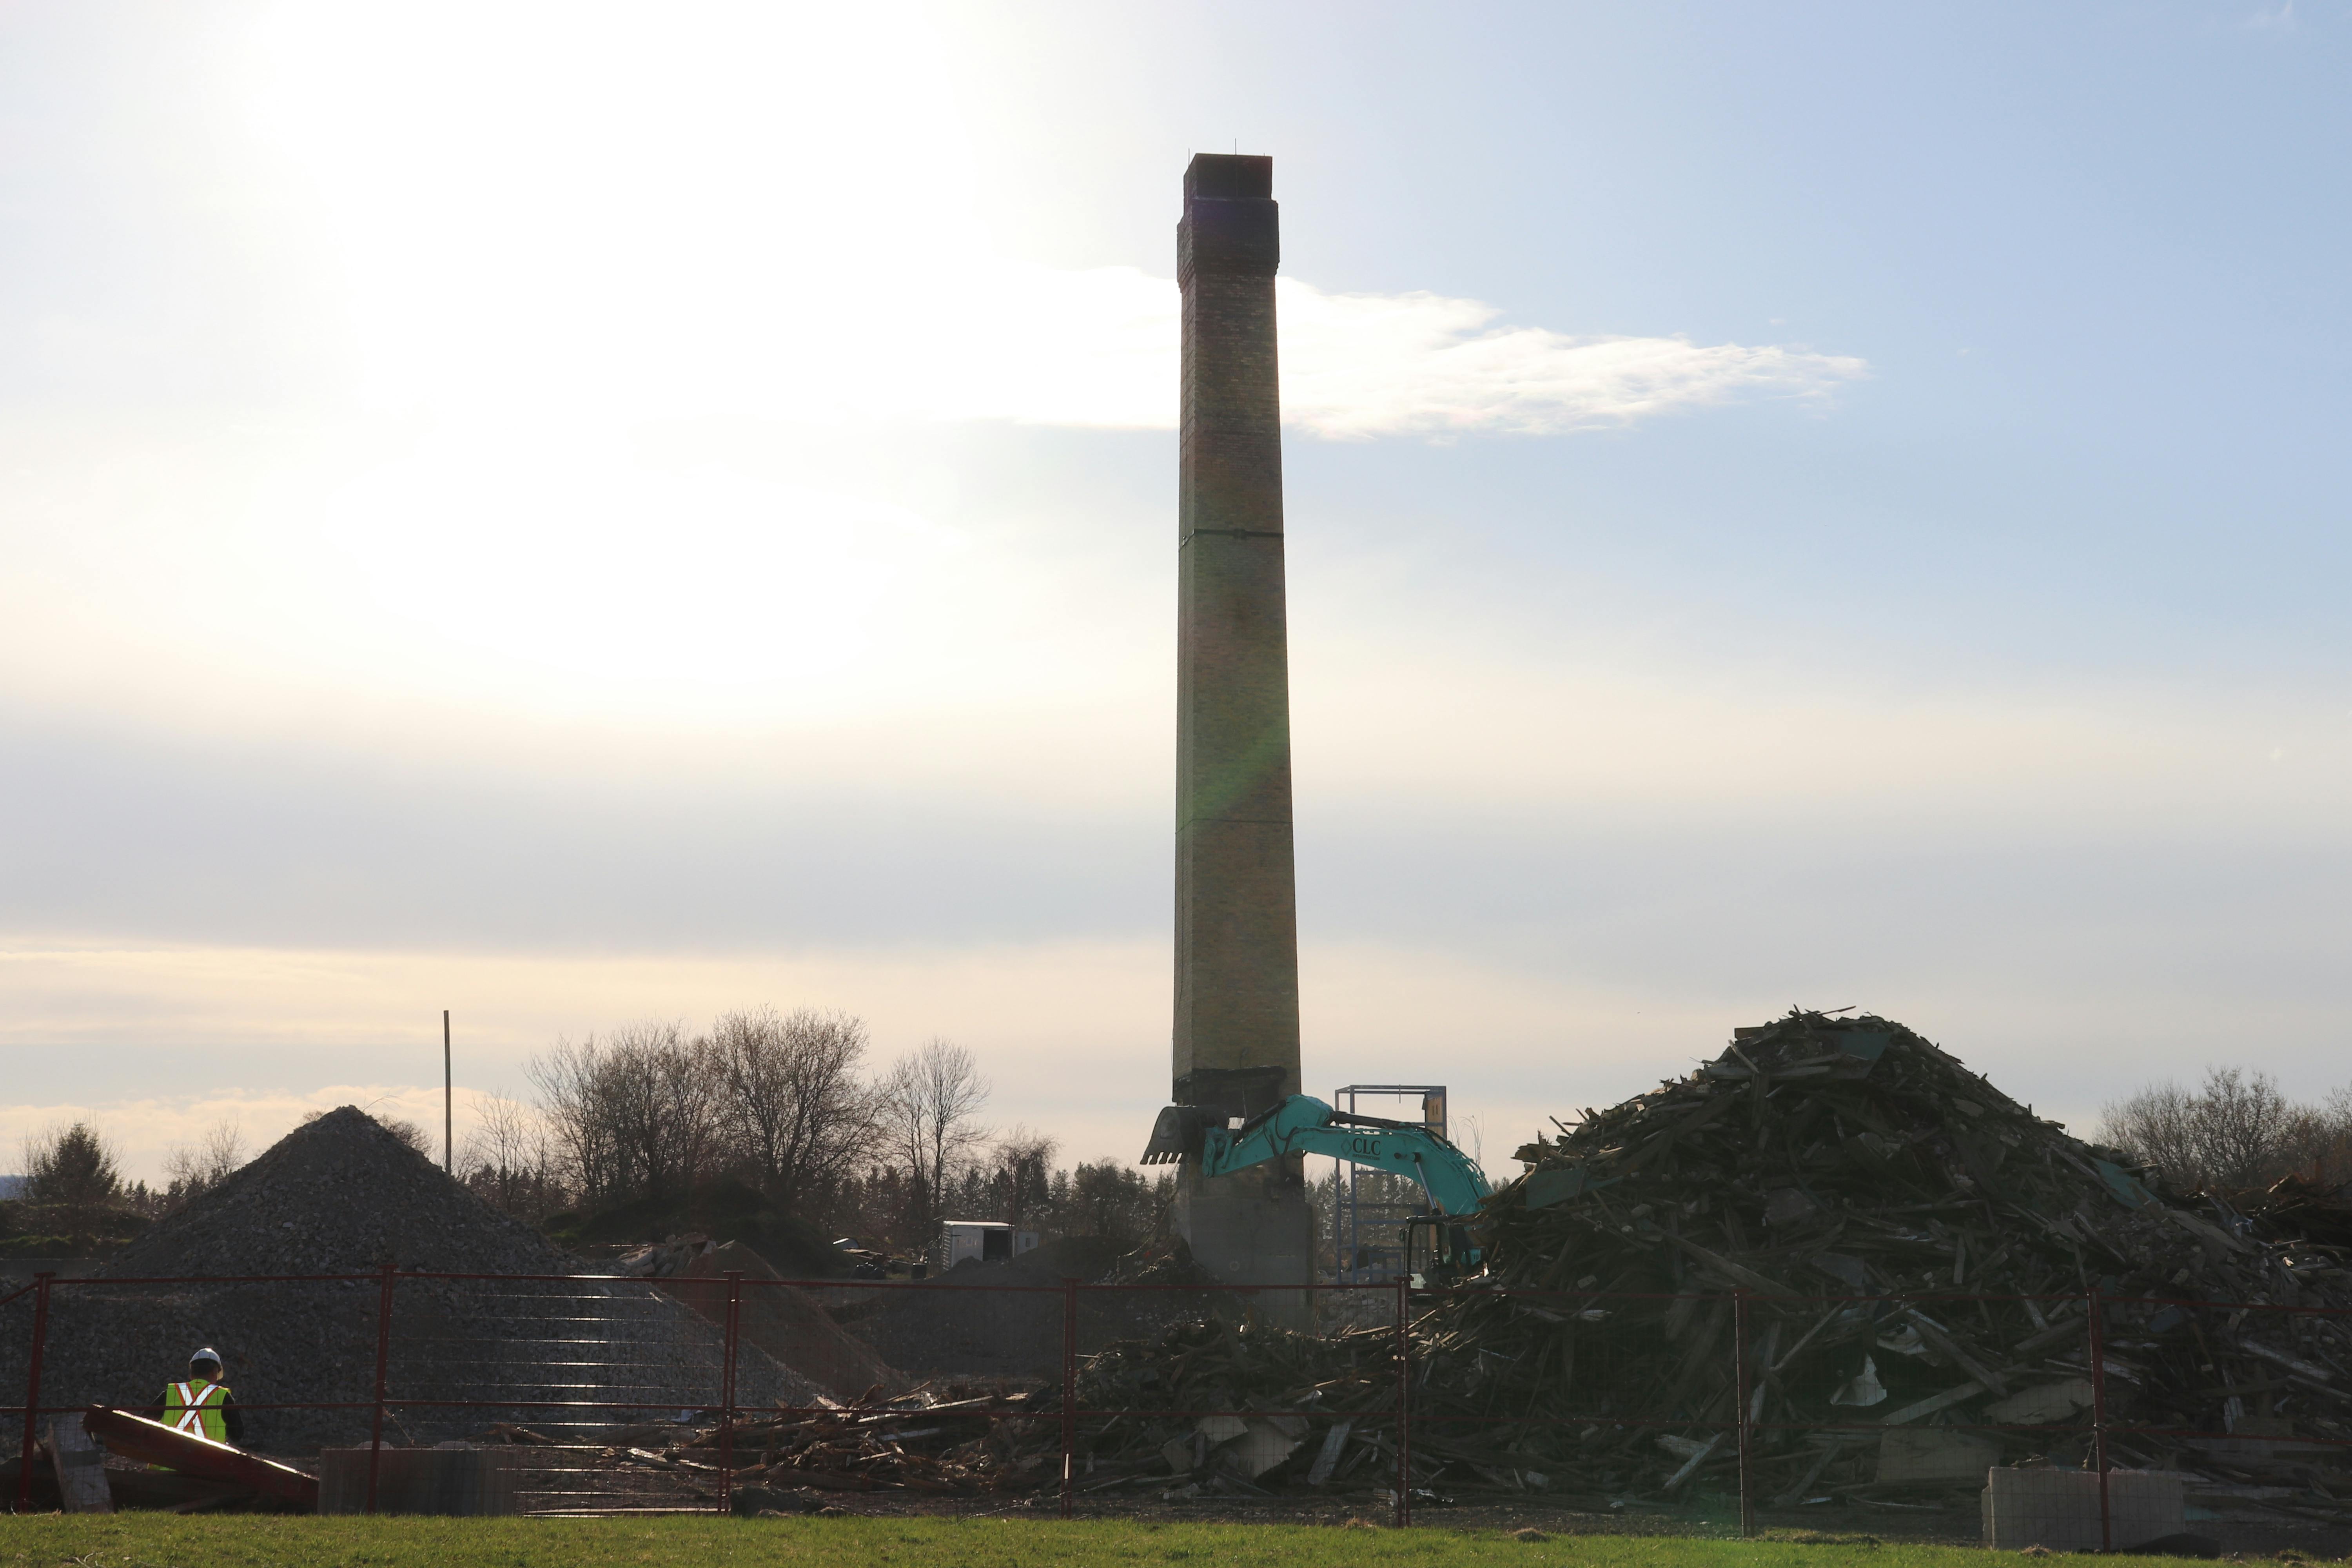 Demolition of Bogdon and Gross - April 9, 2021